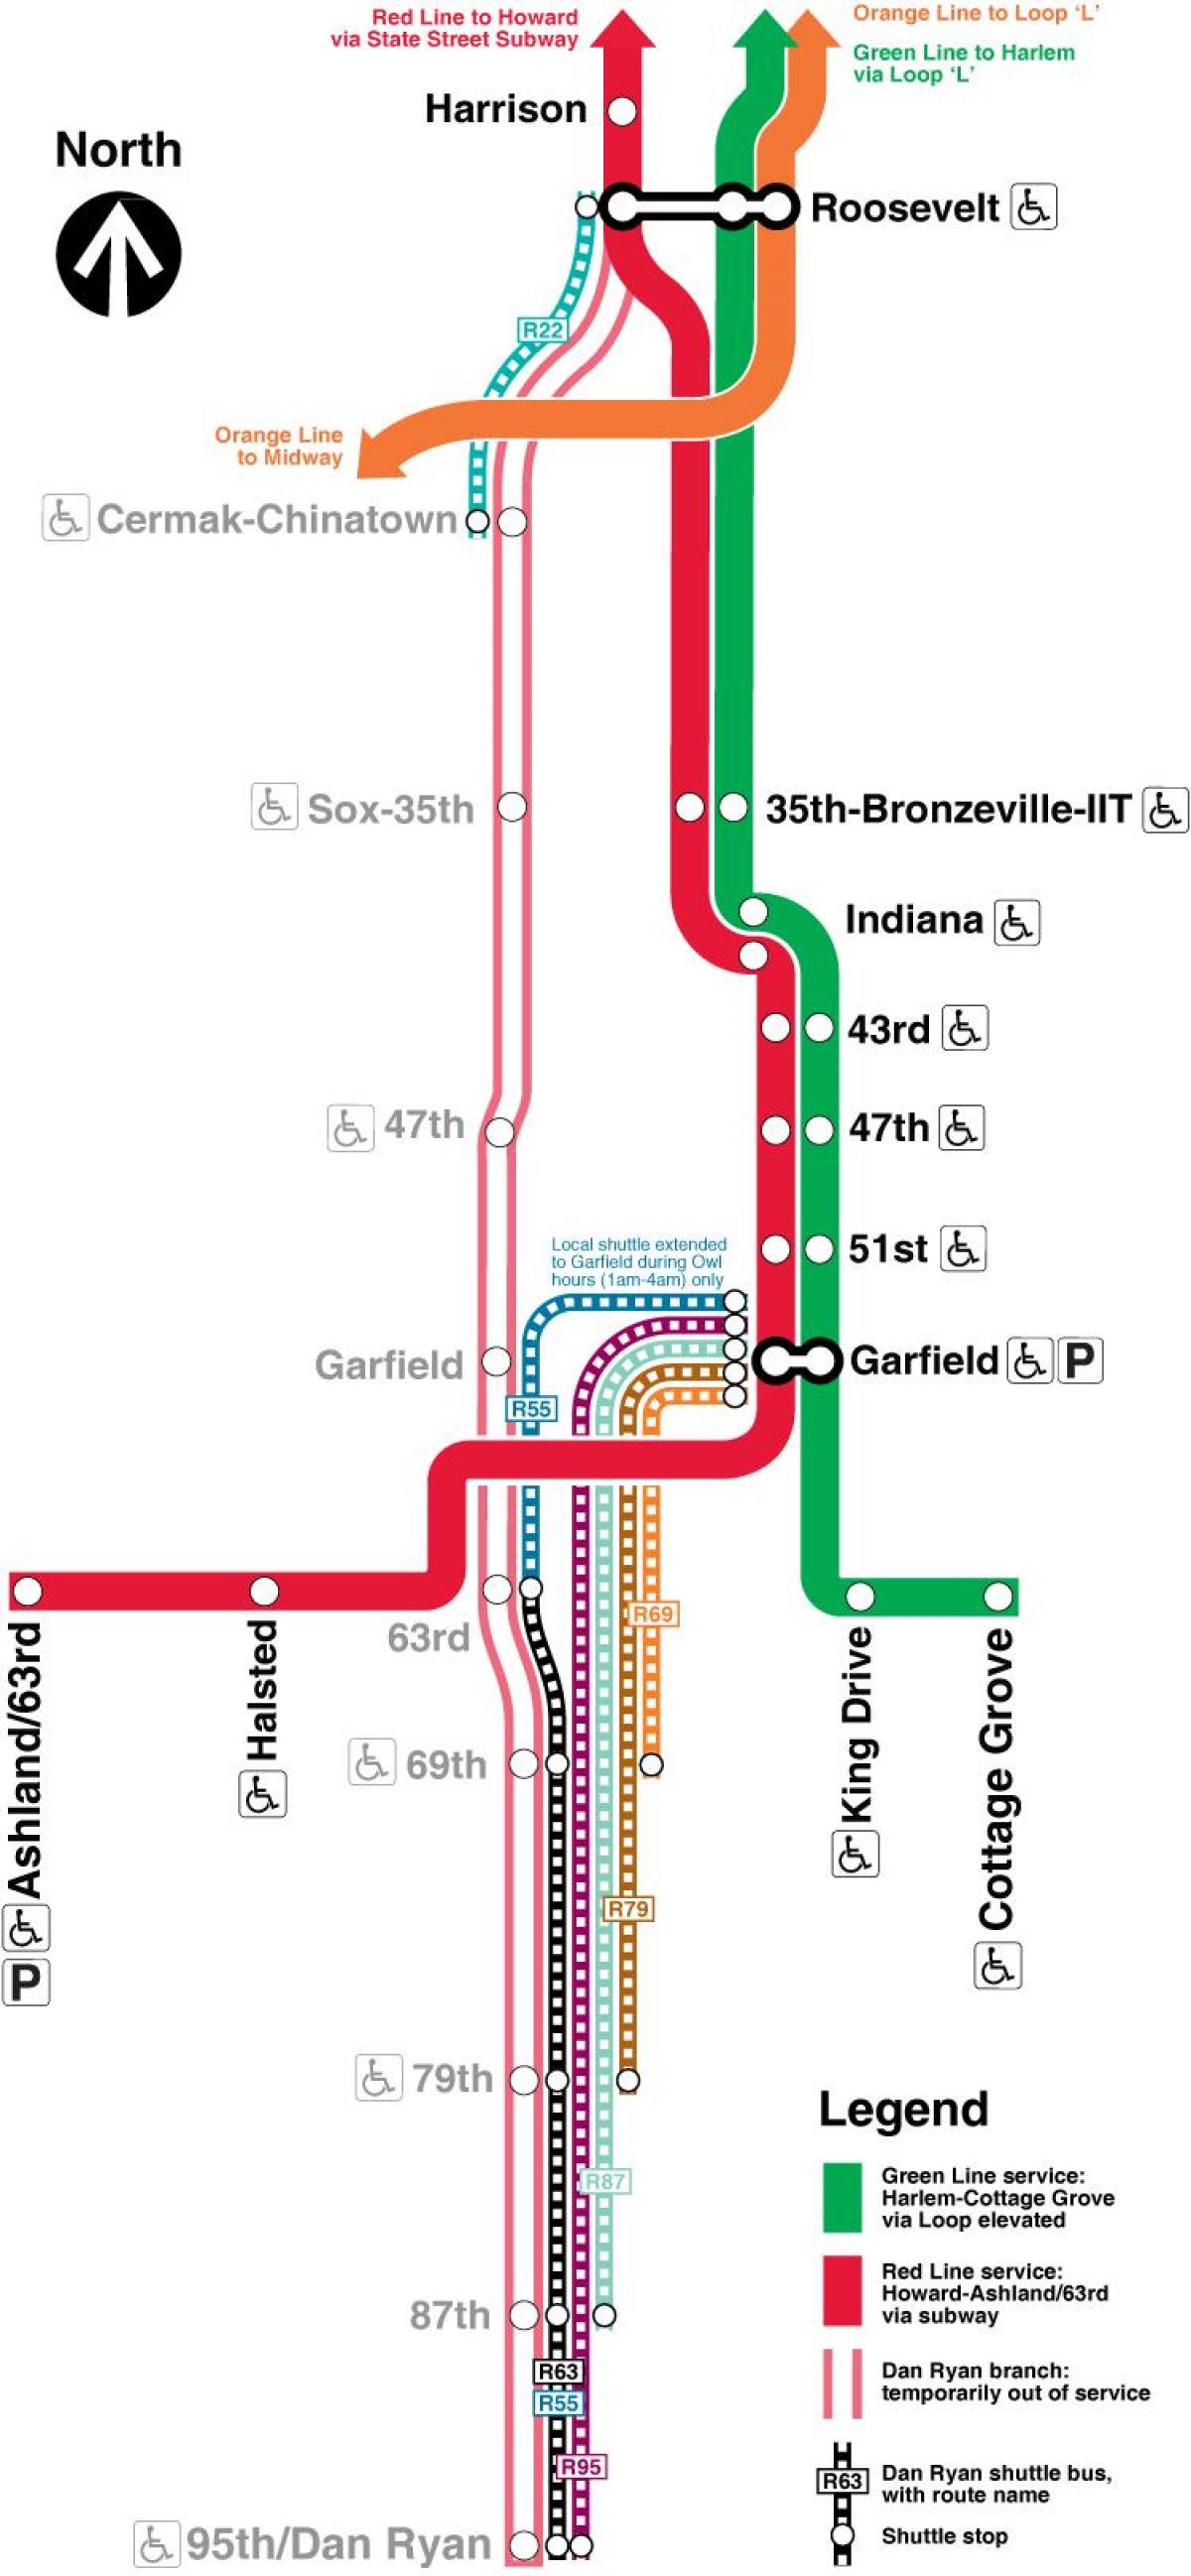 Chicago podzemne železnice zemljevidu z rdečo črto